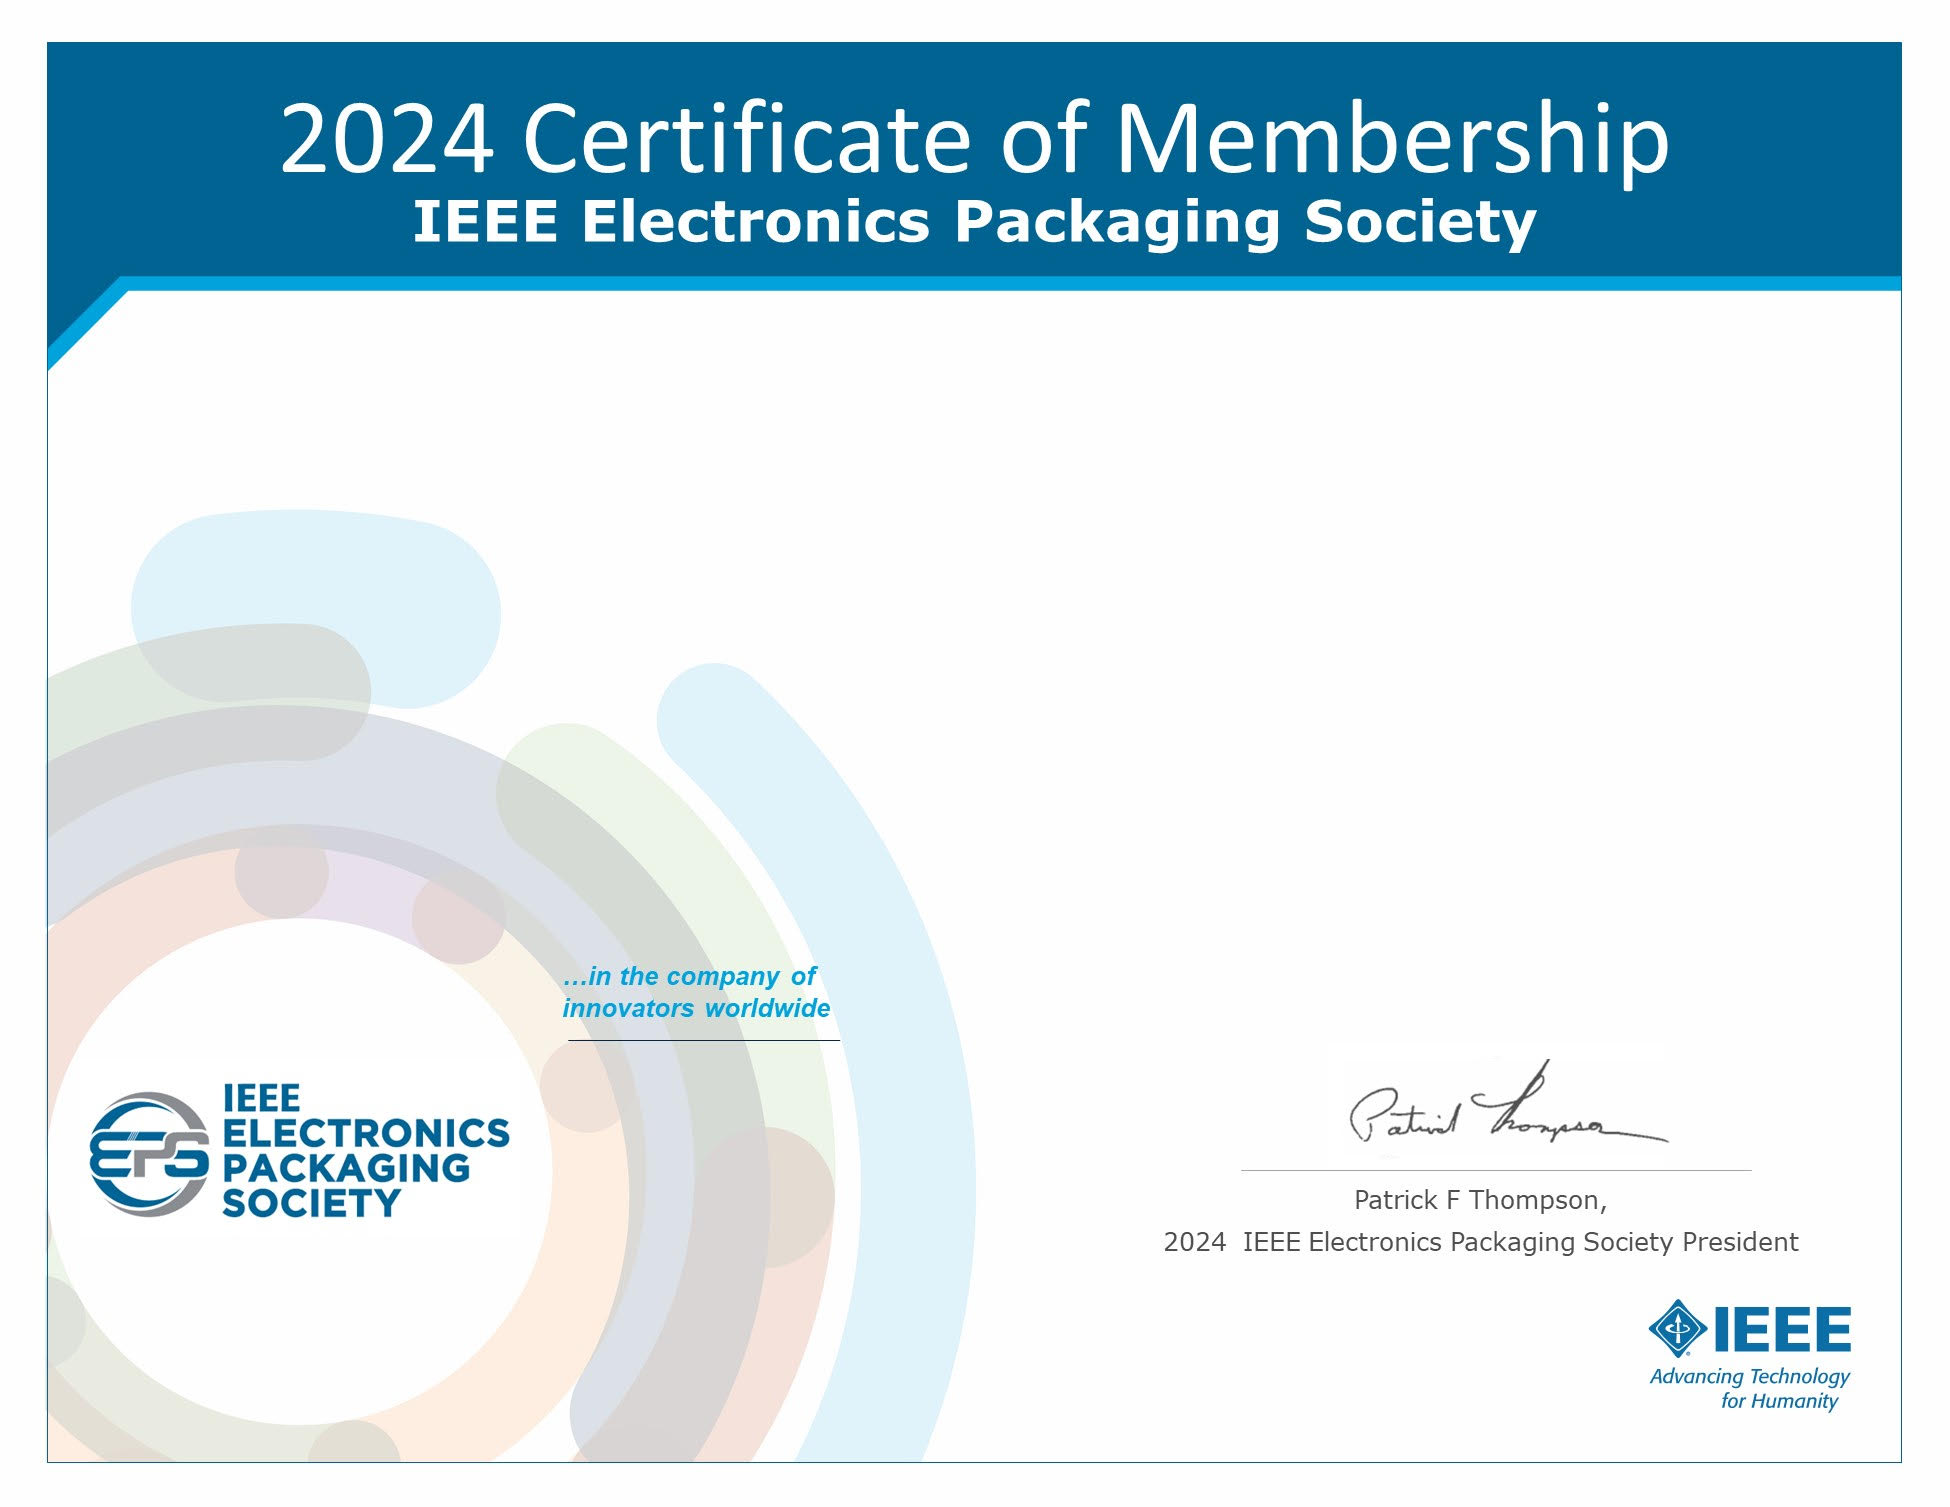 Get your IEEE EPS Membership Certificate IEEE Electronics Packaging